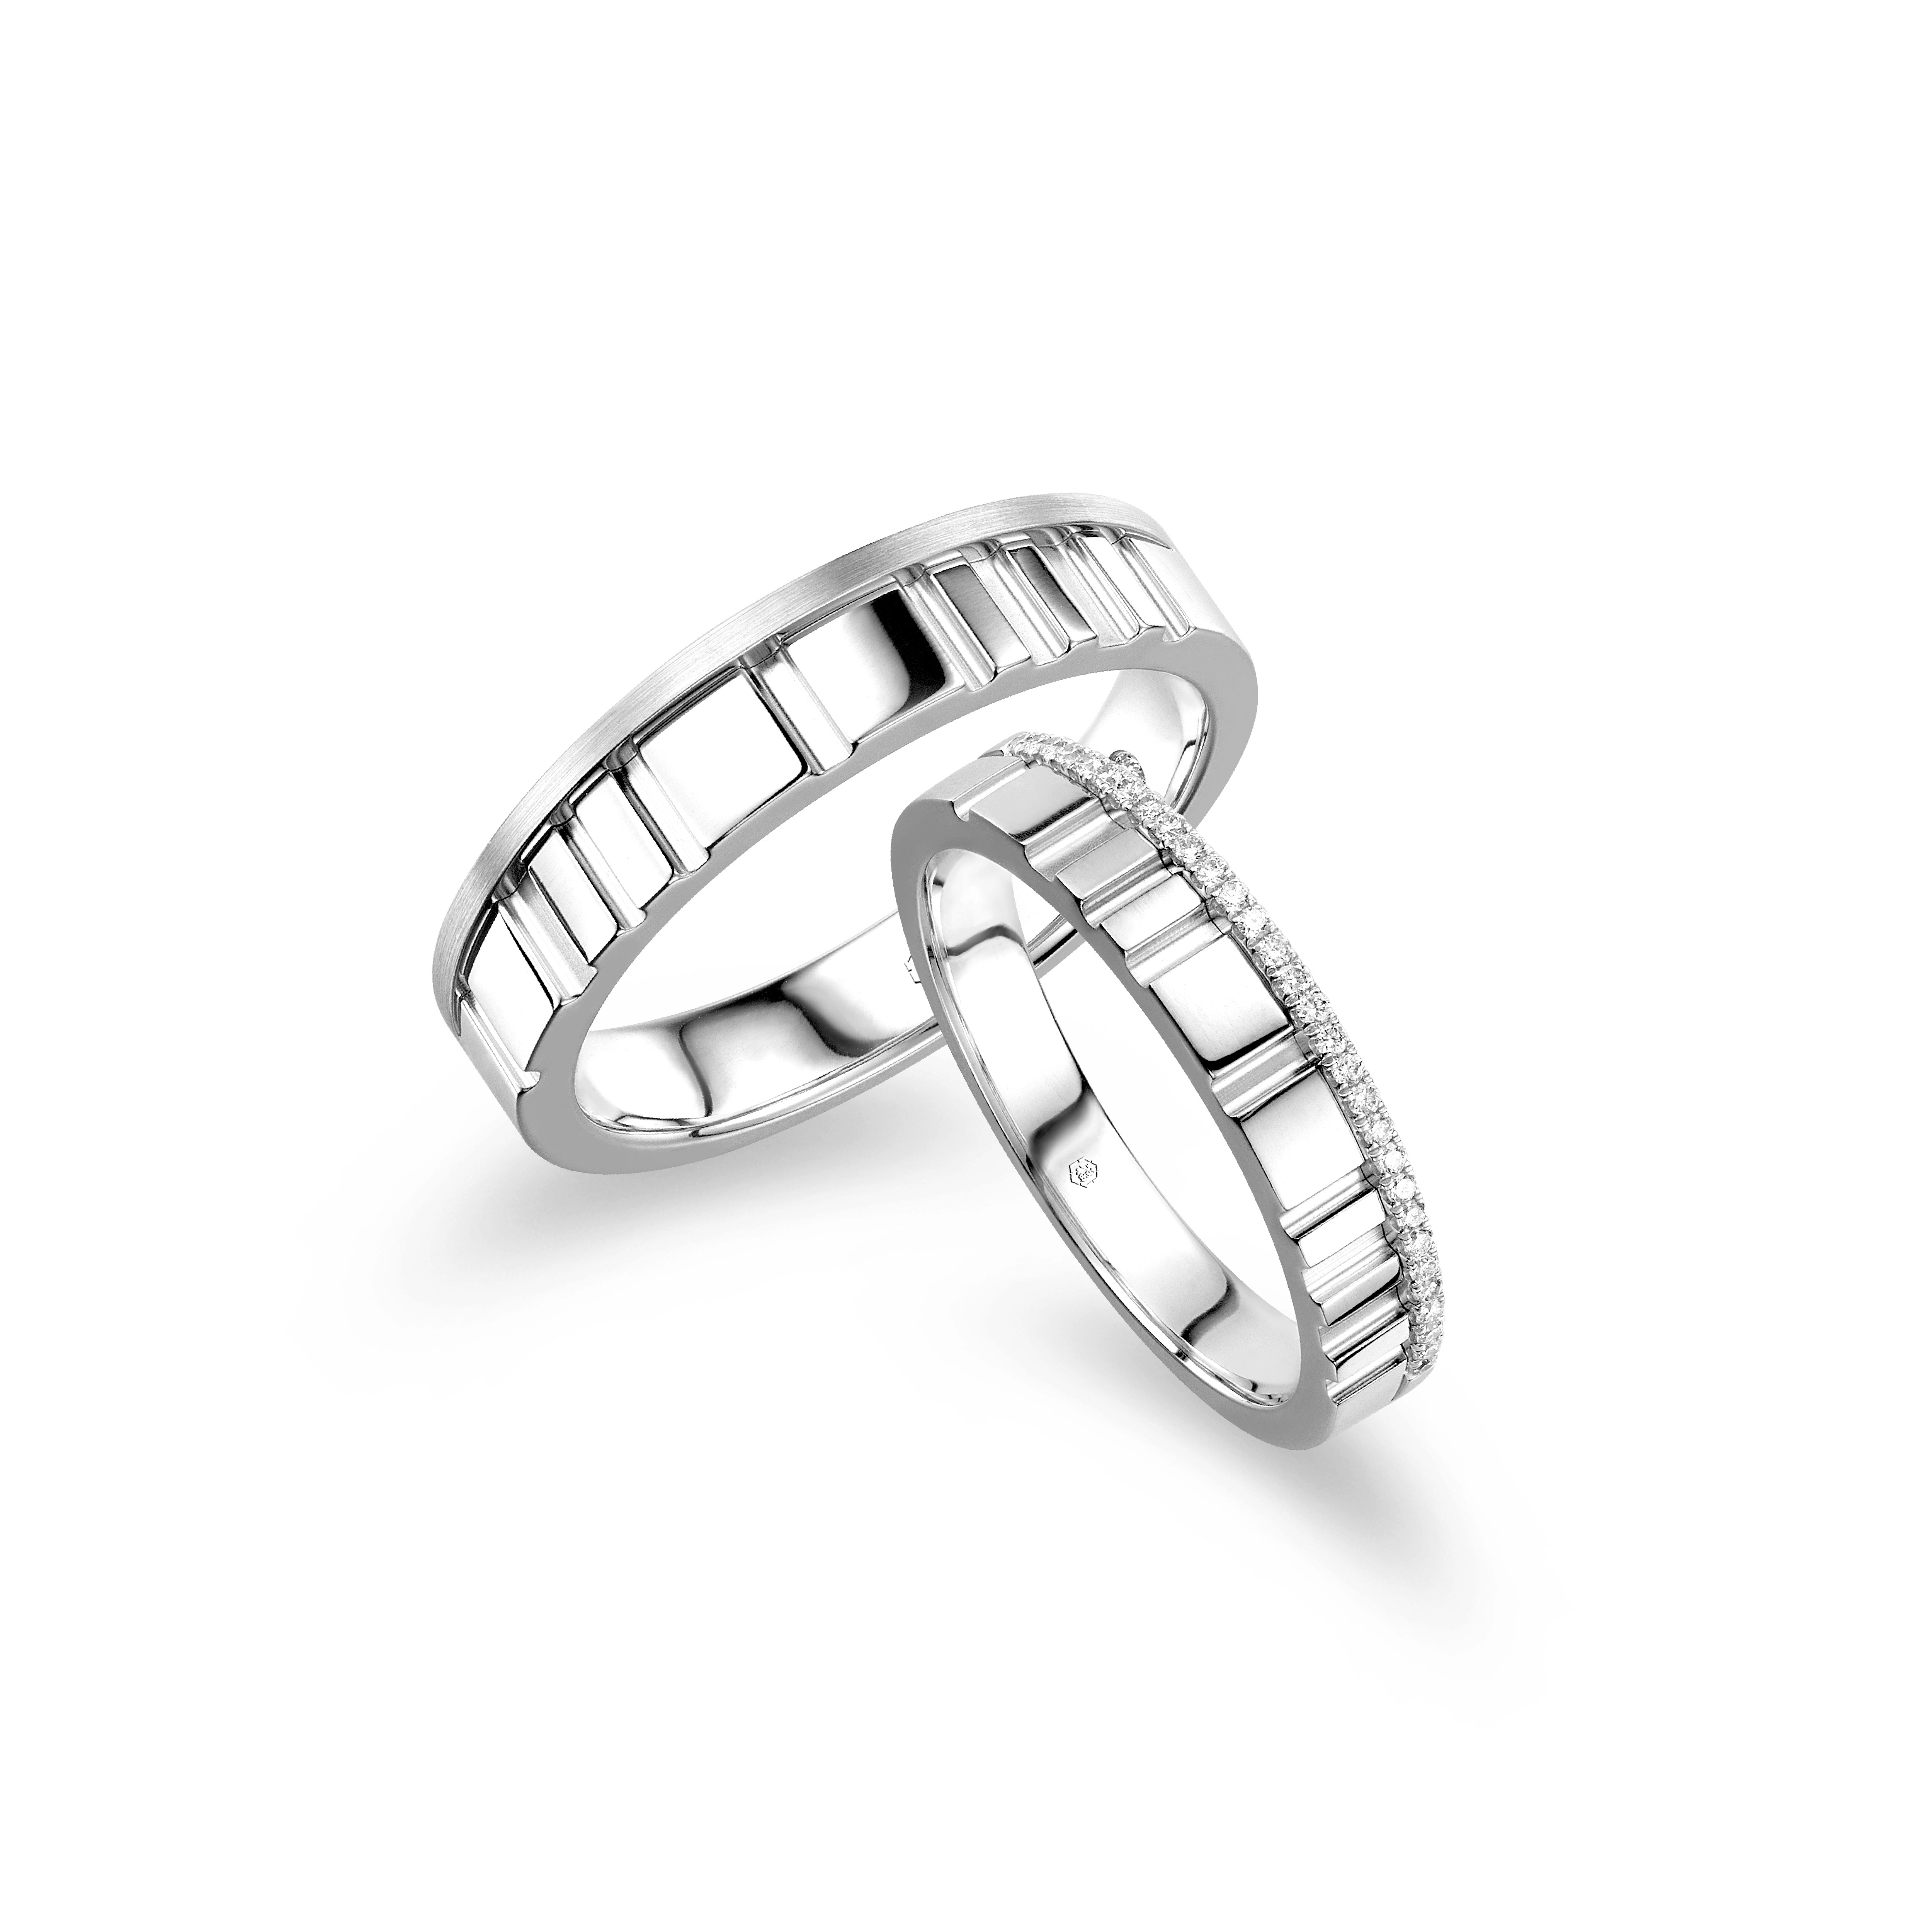 爱恒久系列18K金(白色)钻石情侣戒指